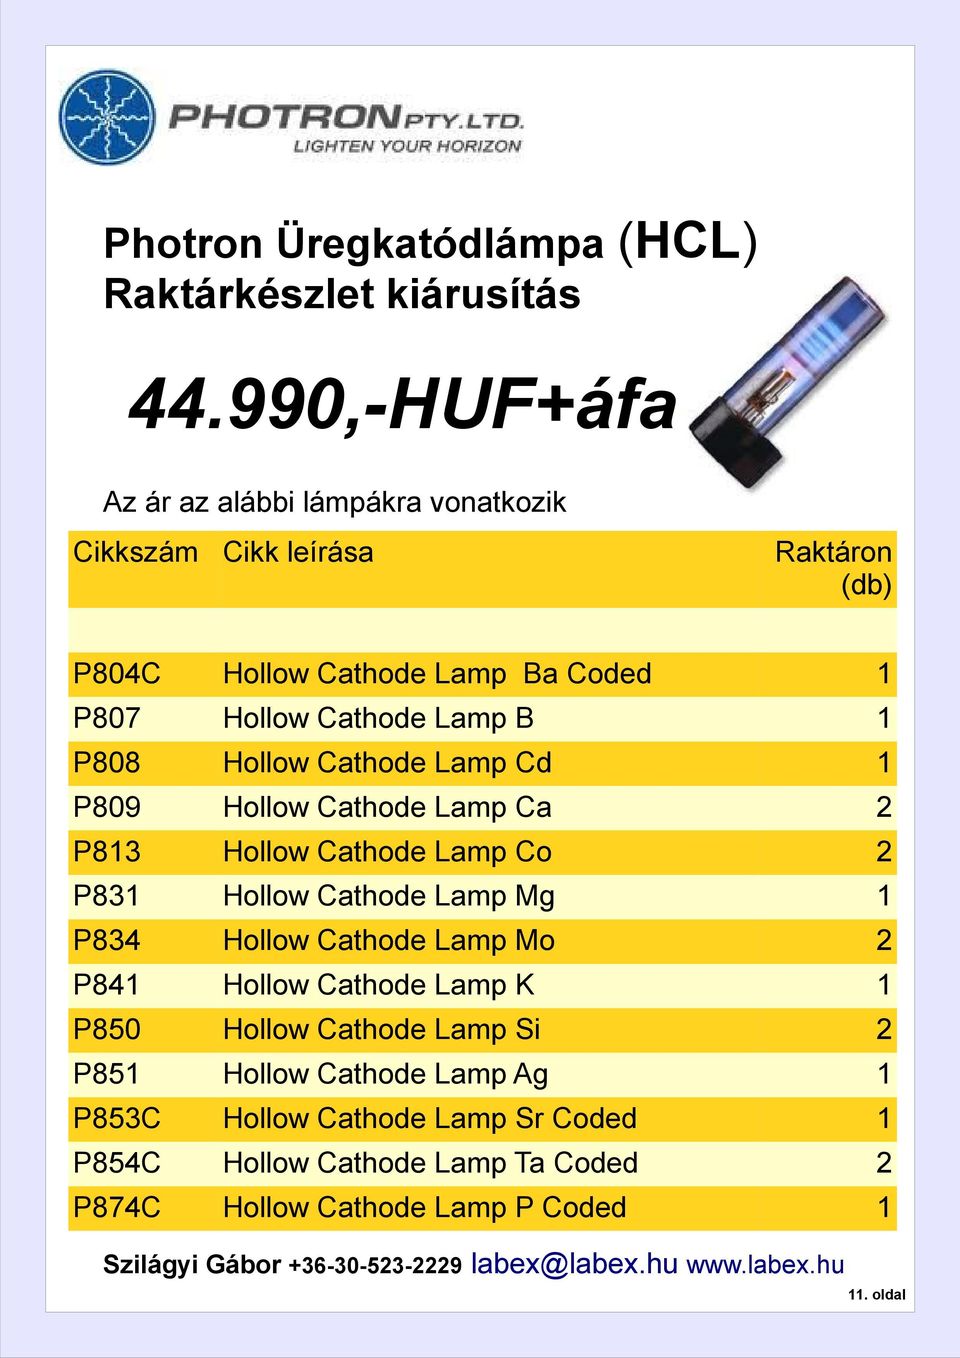 P808 Hollow Cathode Lamp Cd P809 Hollow Cathode Lamp Ca 2 P83 Hollow Cathode Lamp Co 2 P83 Hollow Cathode Lamp Mg P834 Hollow Cathode Lamp Mo 2 P84